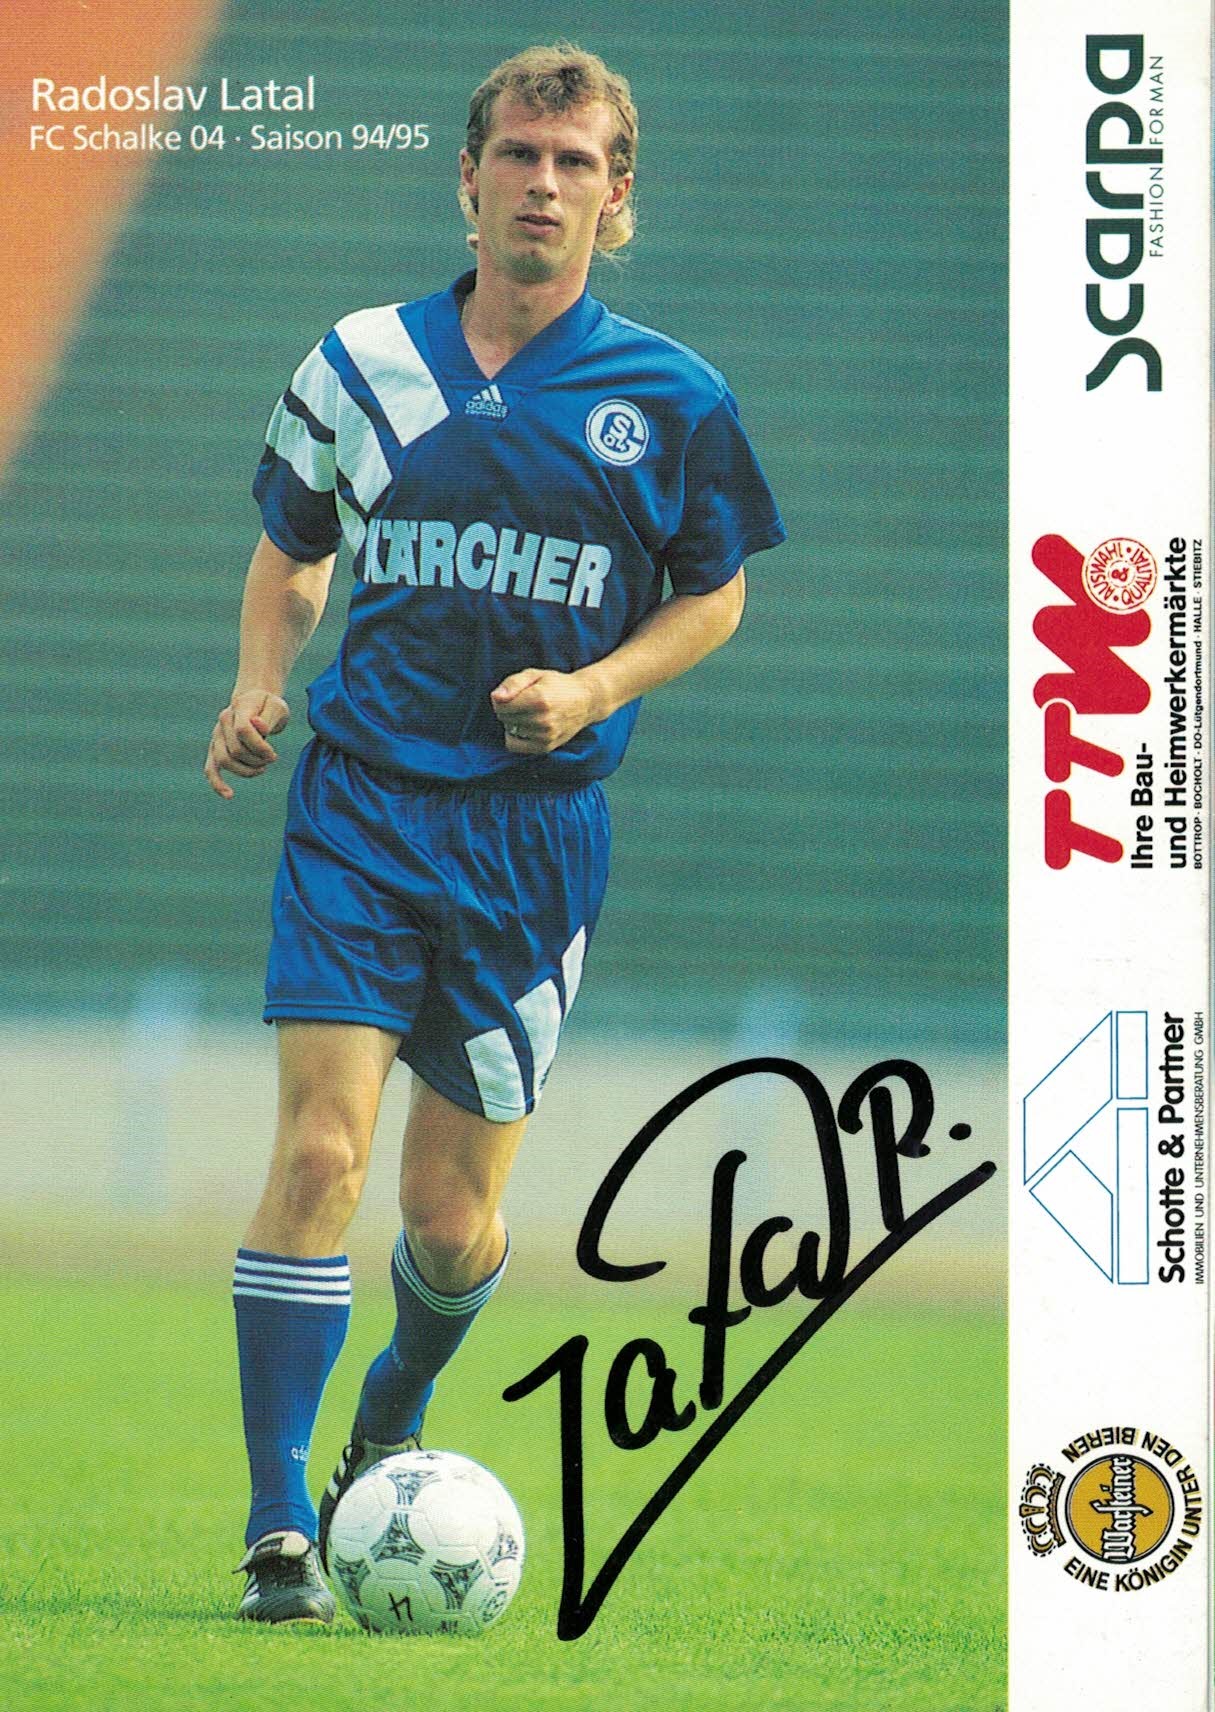 Radoslav Latal Schalke 04 1994/95 Podpisova karta autogram